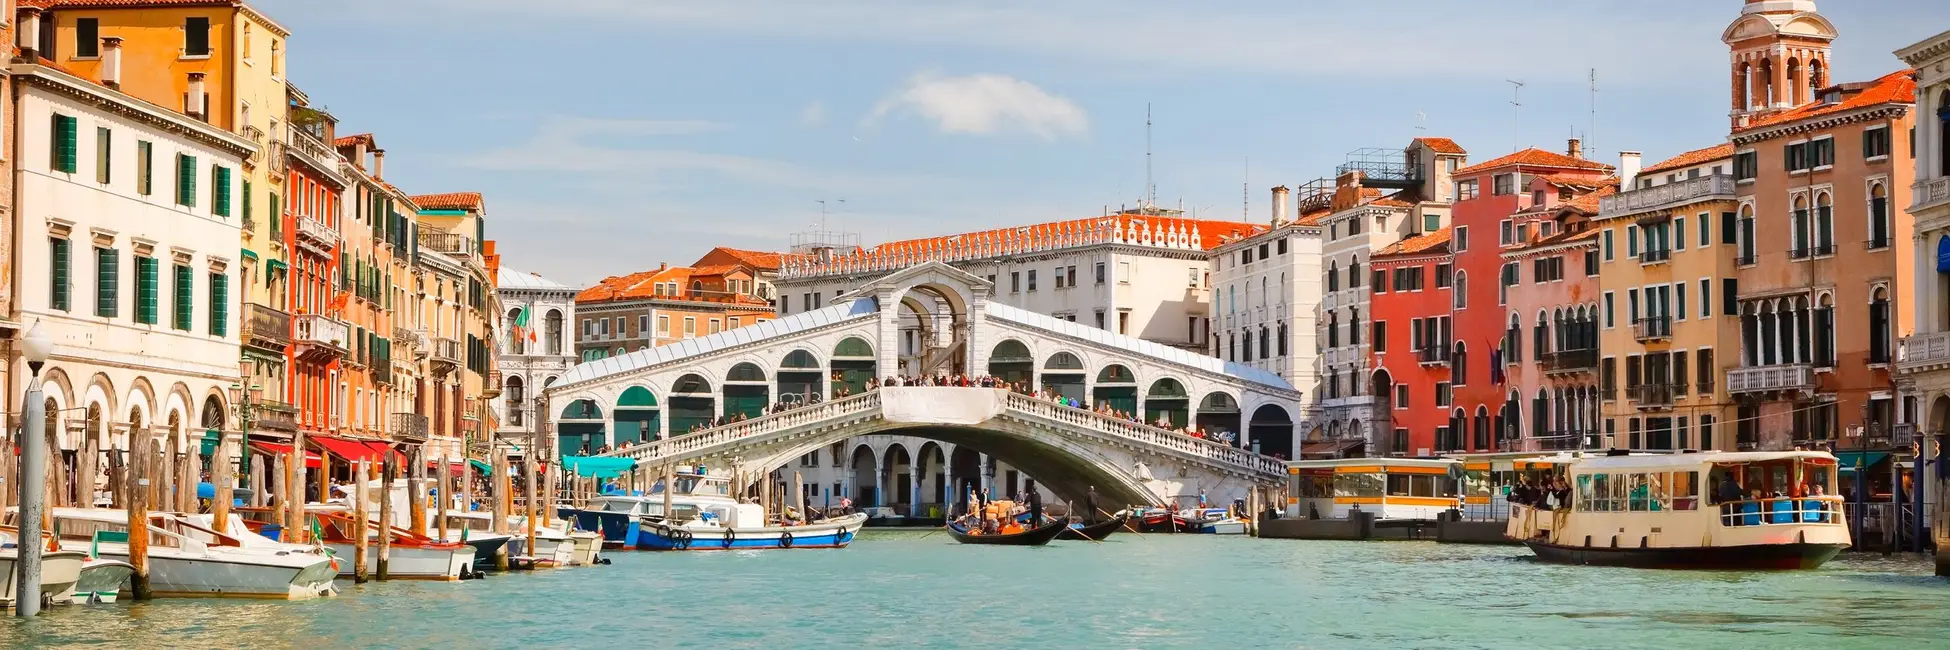 Le grand pont Rialto de Venise 